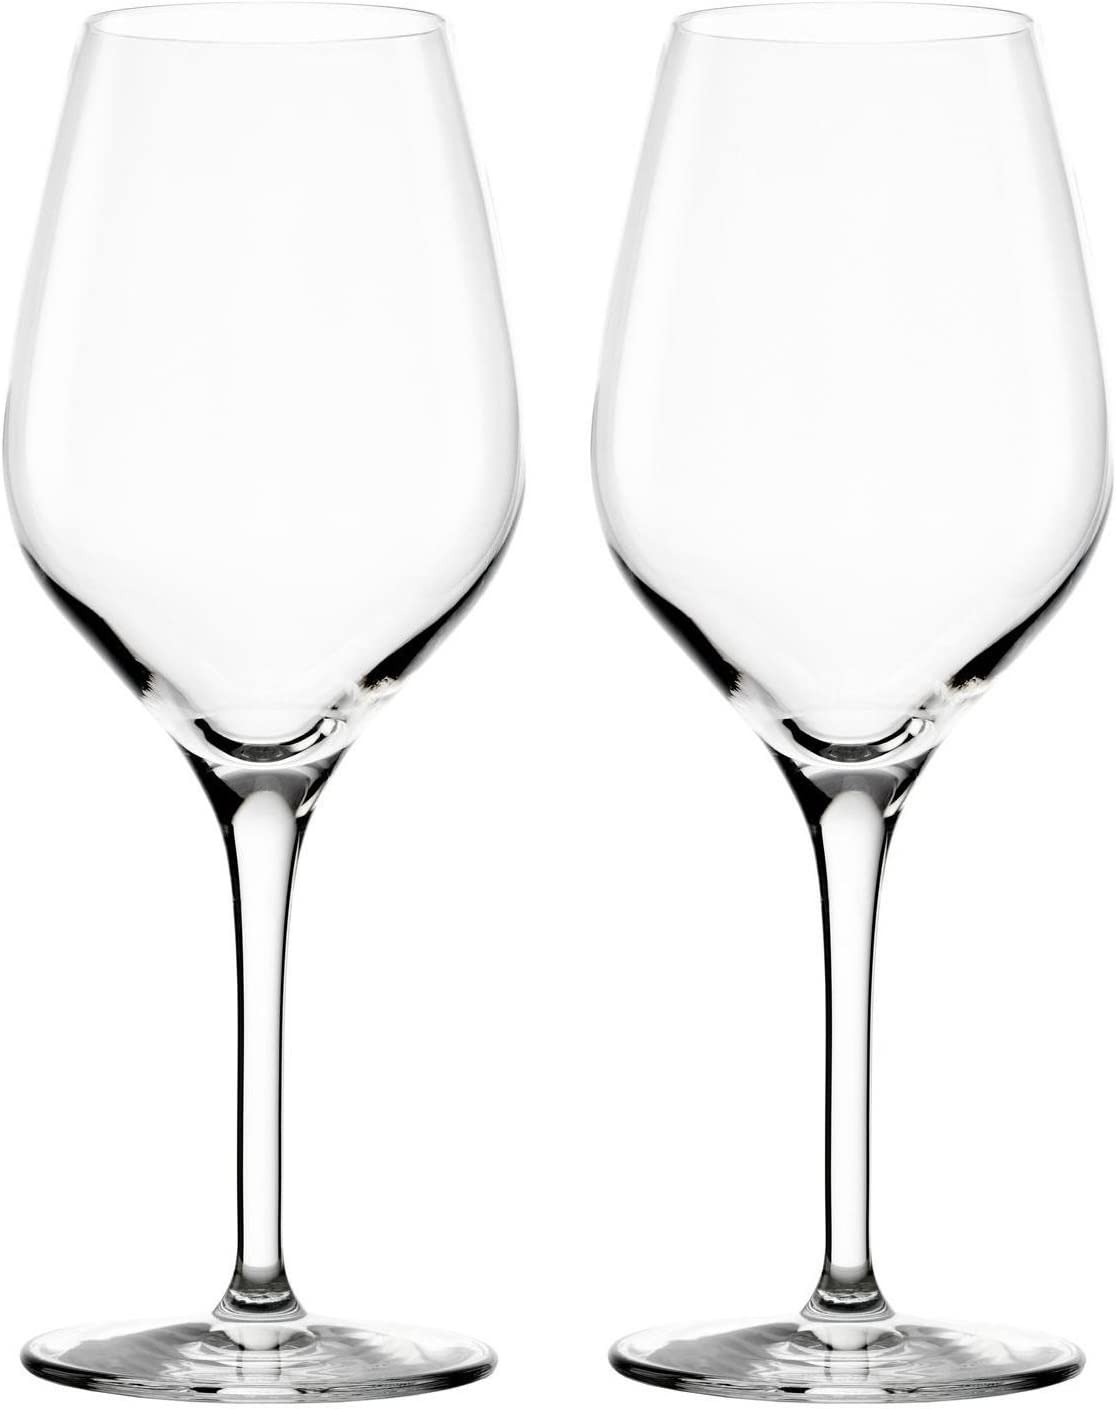 \ 'Stölzle SZ147 000 \ "Exquisit White Wine Glasses Set of 2